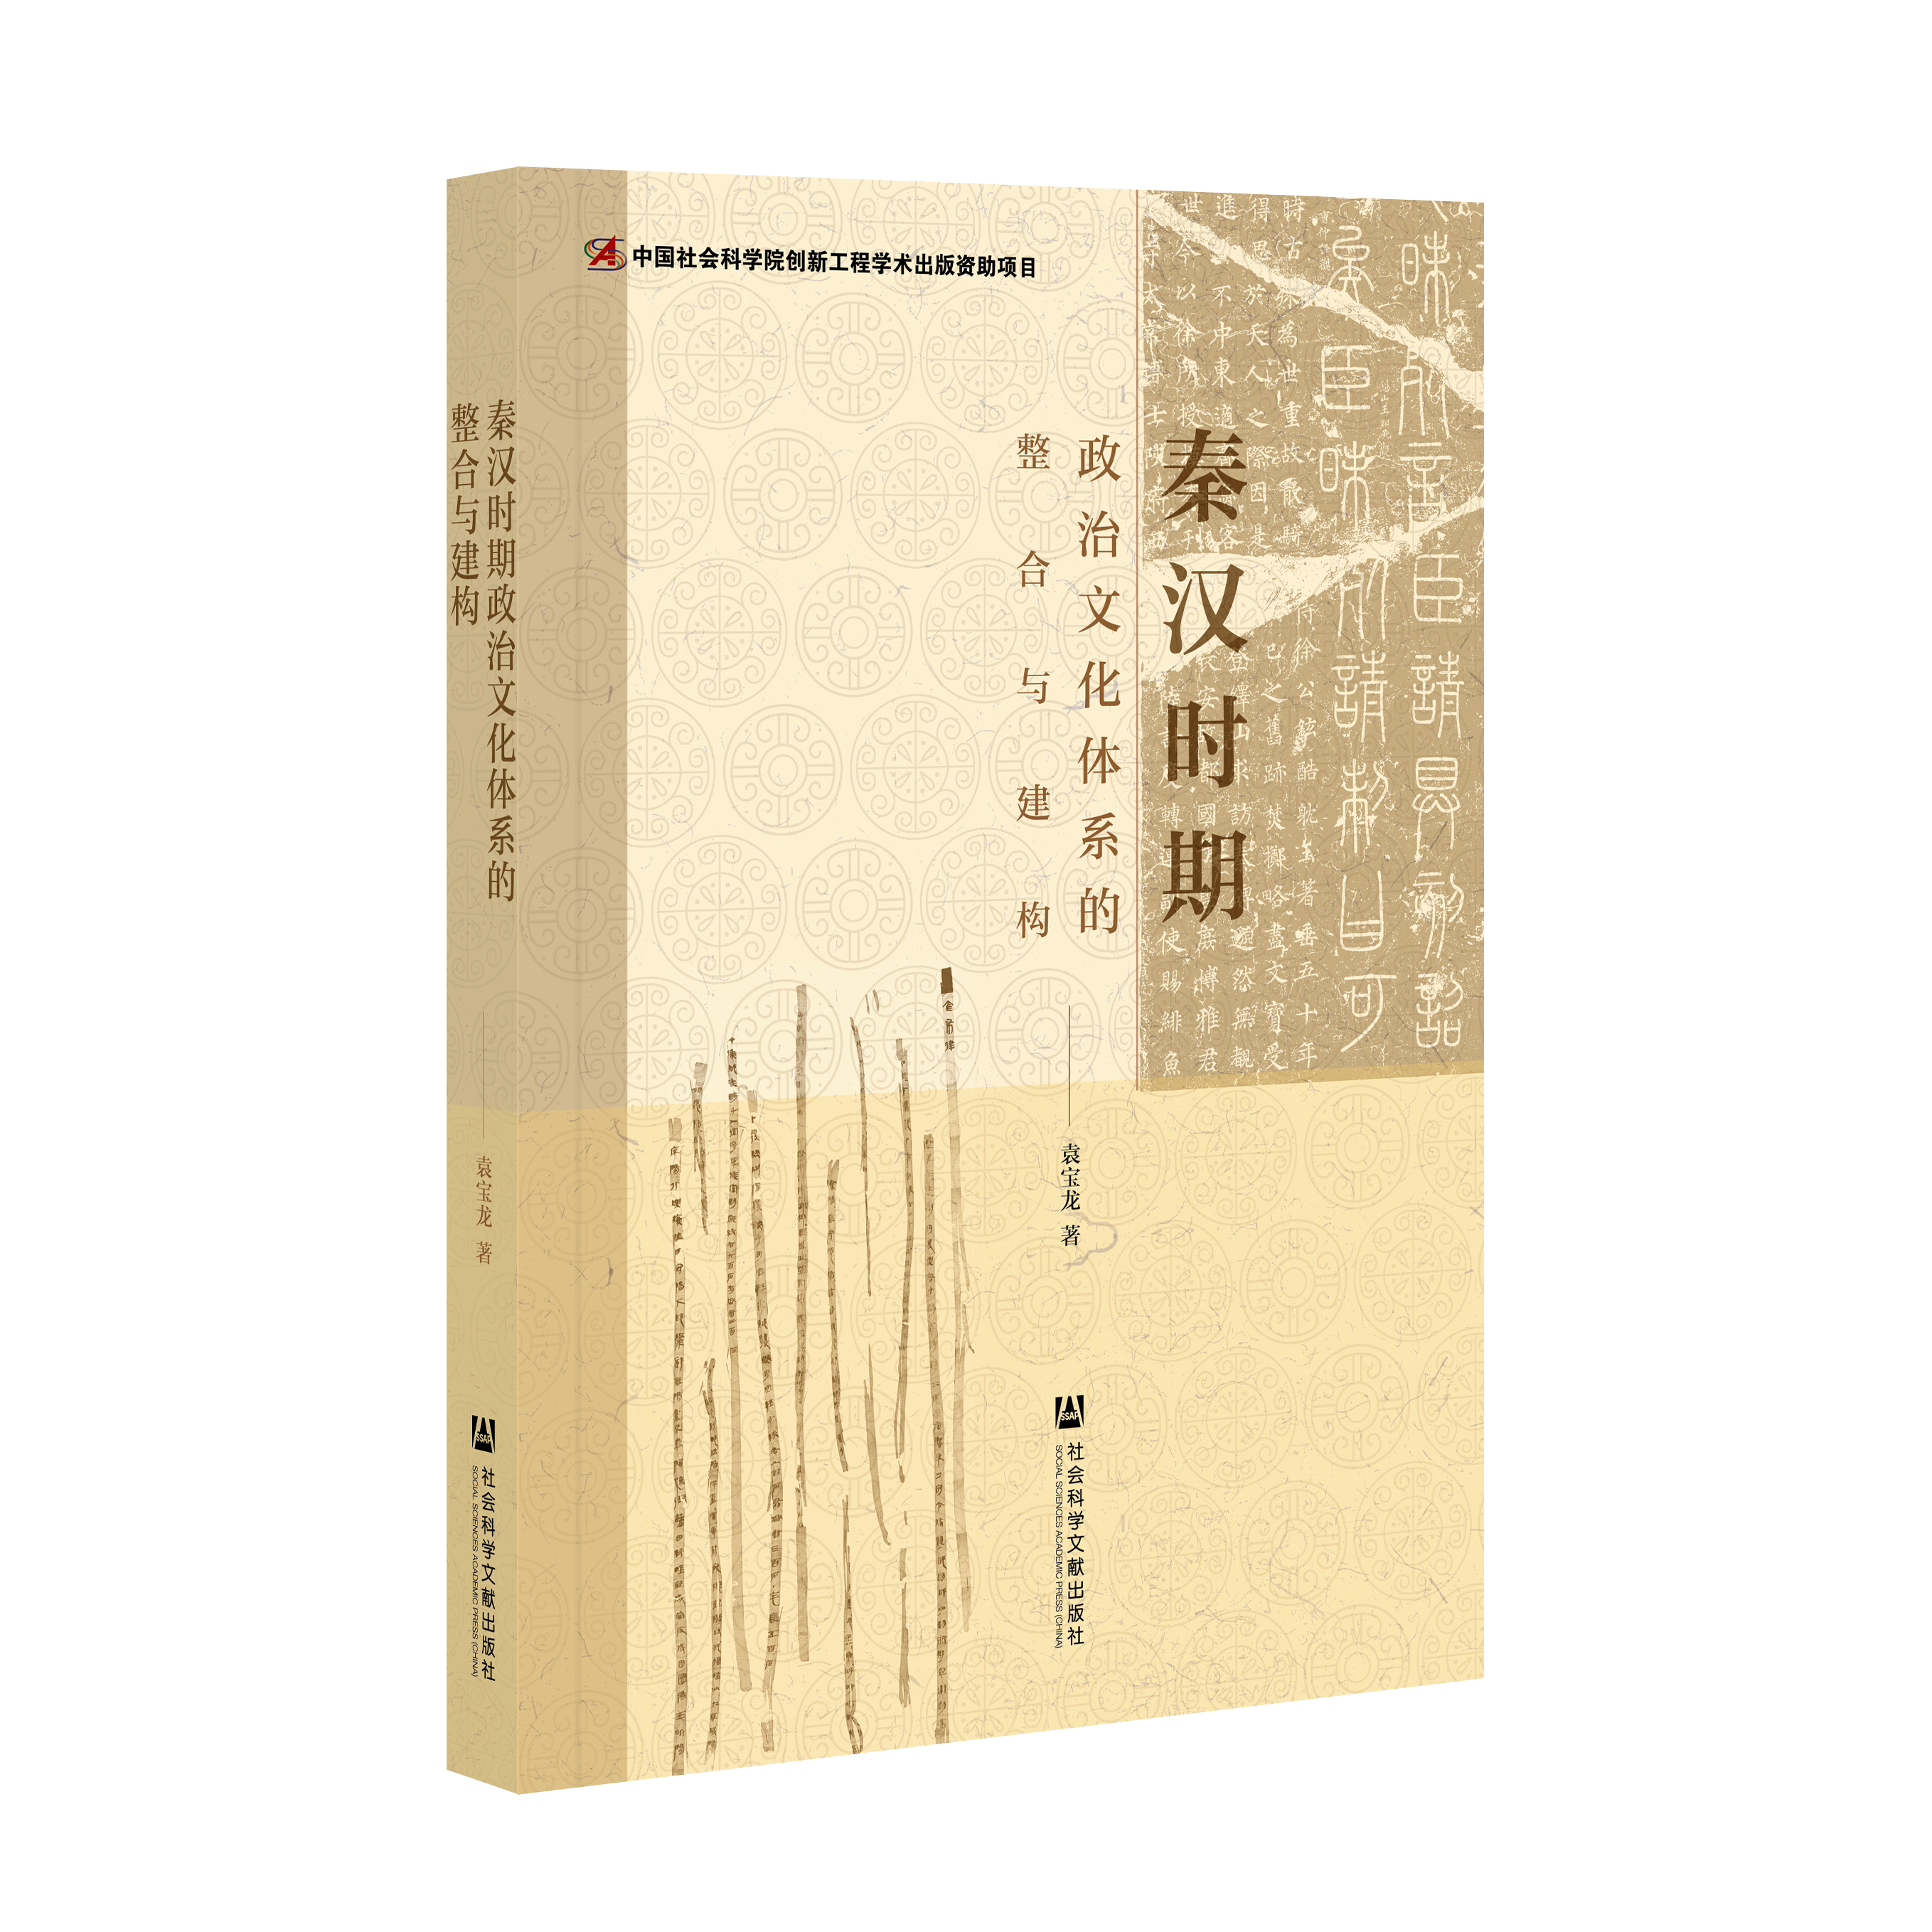 秦汉时期政治文化体系的整合与建构（978-7-5201-8261-4）_立体书影.png